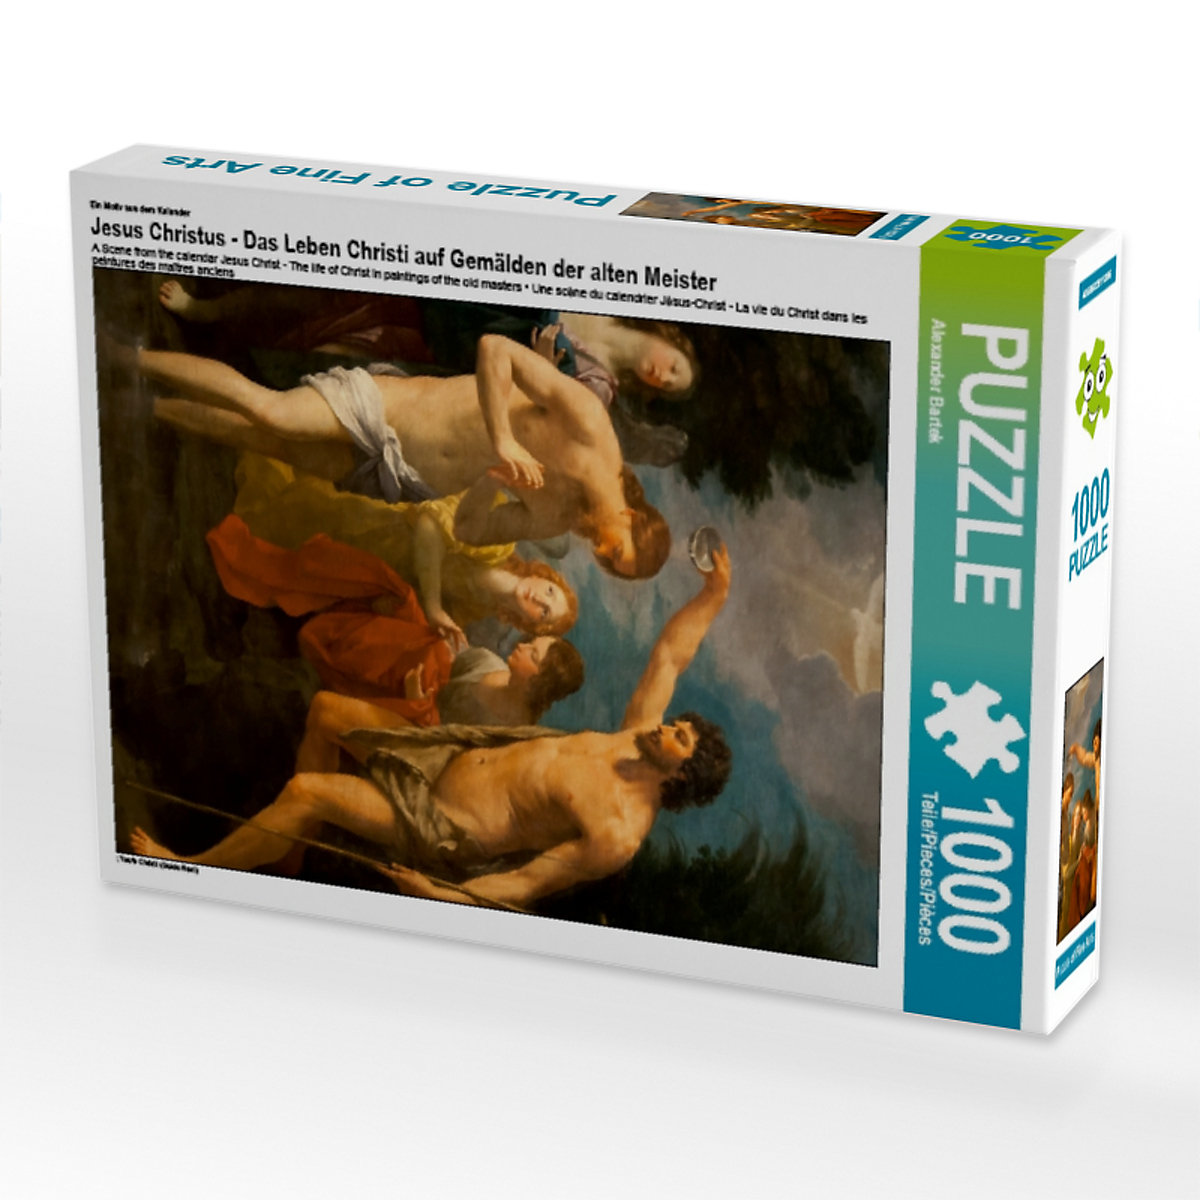 CALVENDO® Puzzle CALVENDO Puzzle Jesus Christus Das Leben Christi auf Gemälden der alten Meister 1000 Teile Foto-Puzzle für glückliche Stunden